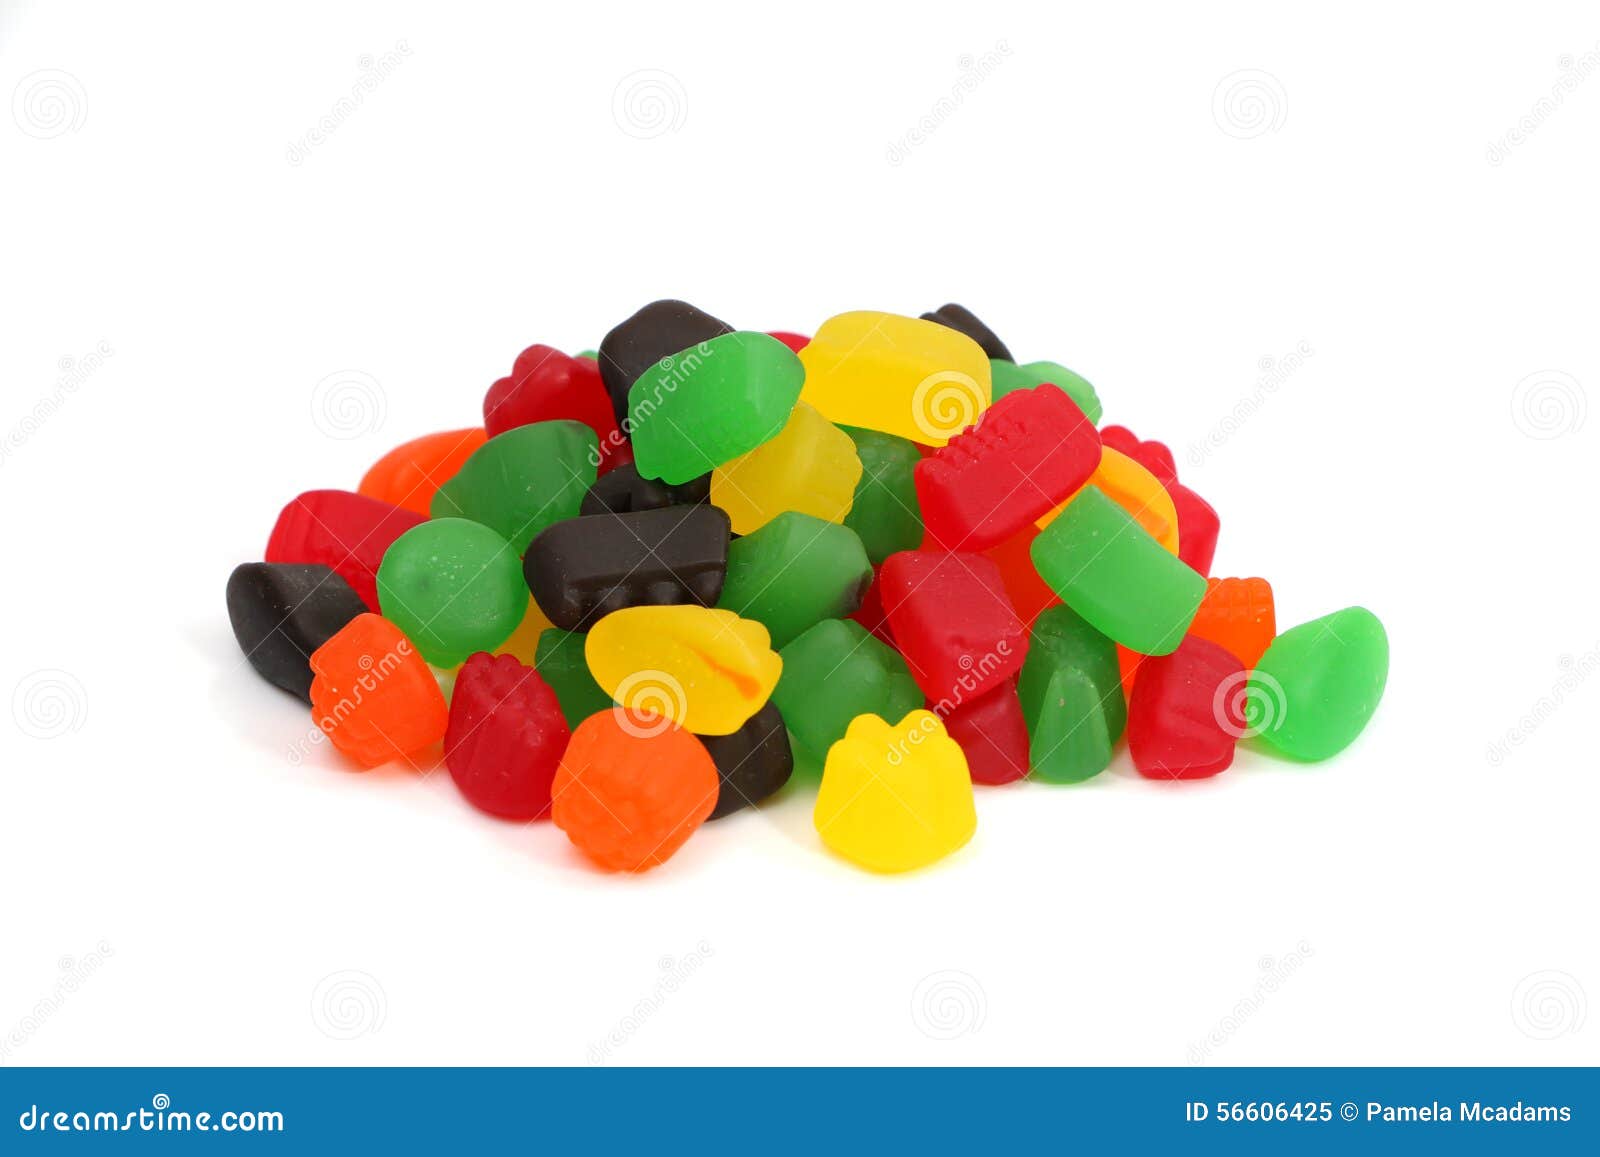 Jelly Fruit Candy. Het suikergoed van het geleifruit op een witte achtergrond wordt geïsoleerd die